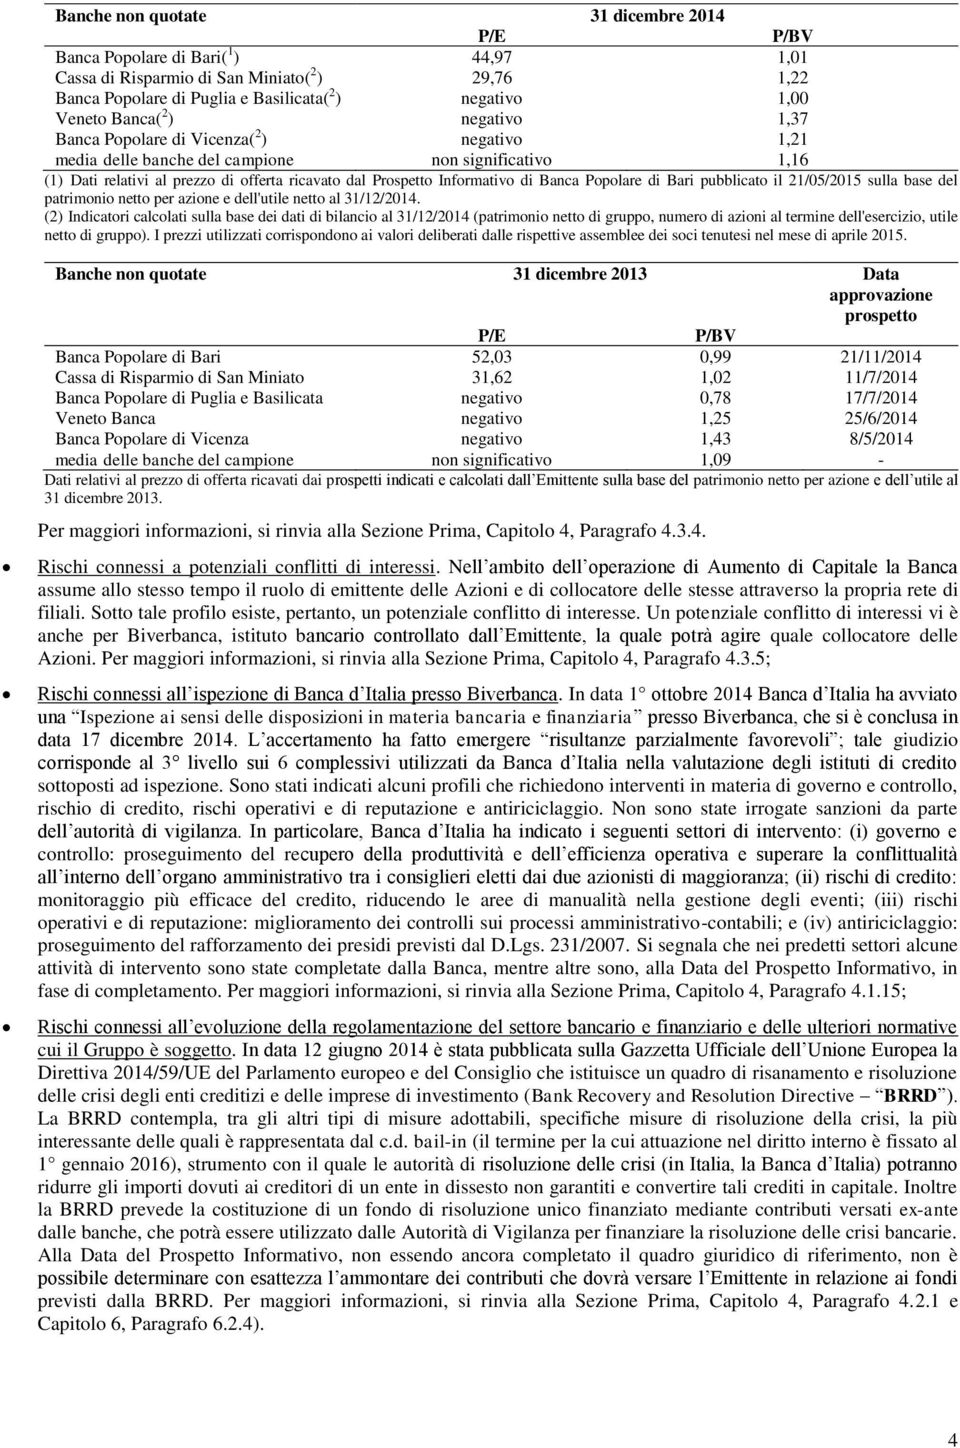 di Banca Popolare di Bari pubblicato il 21/05/2015 sulla base del patrimonio netto per azione e dell'utile netto al 31/12/2014.